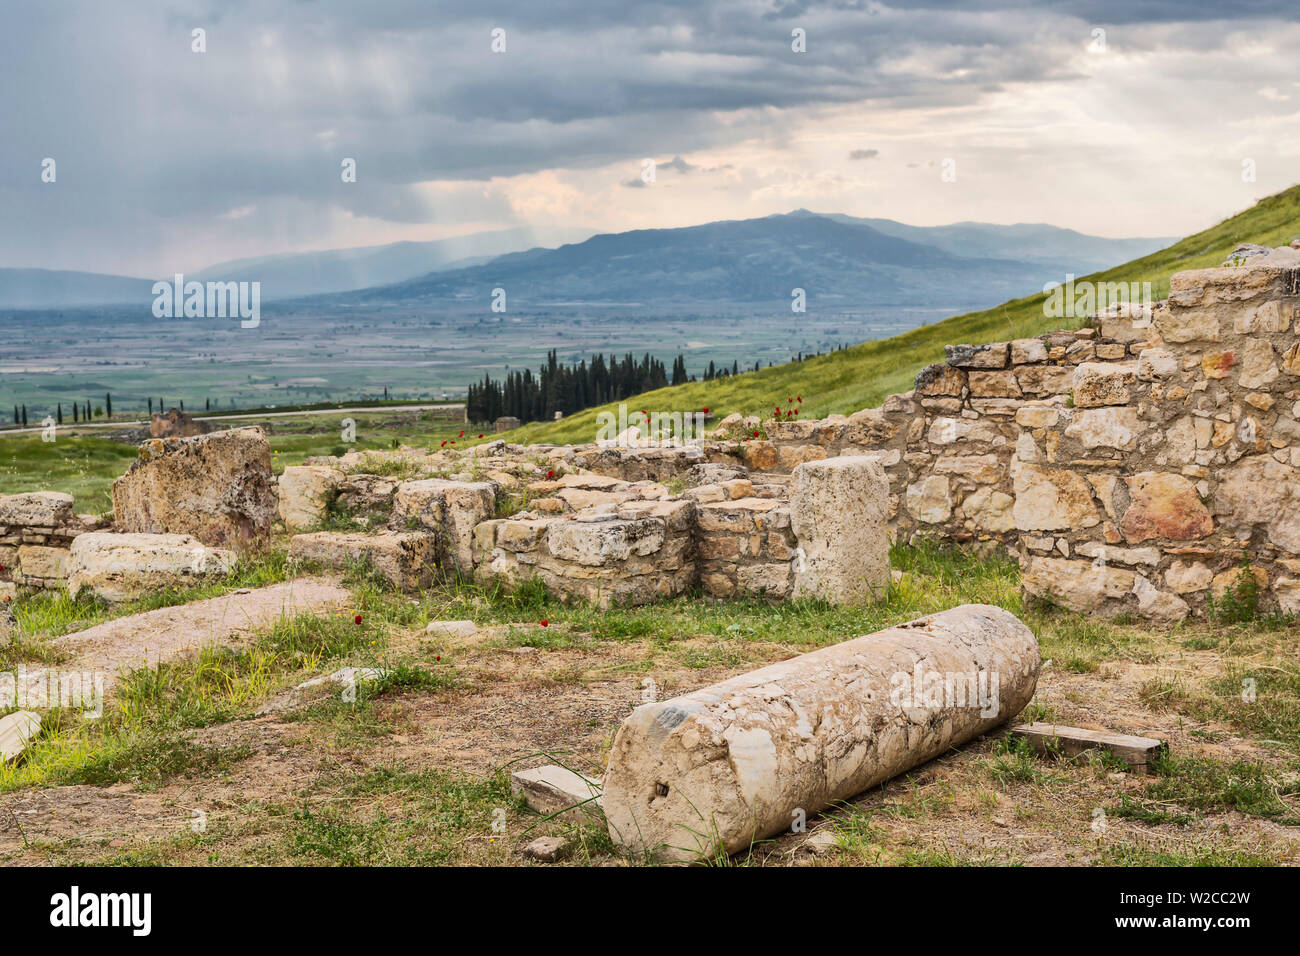 Ruines de la cité antique de Hiérapolis, Pamukkale, province de Denizli, Turquie Banque D'Images